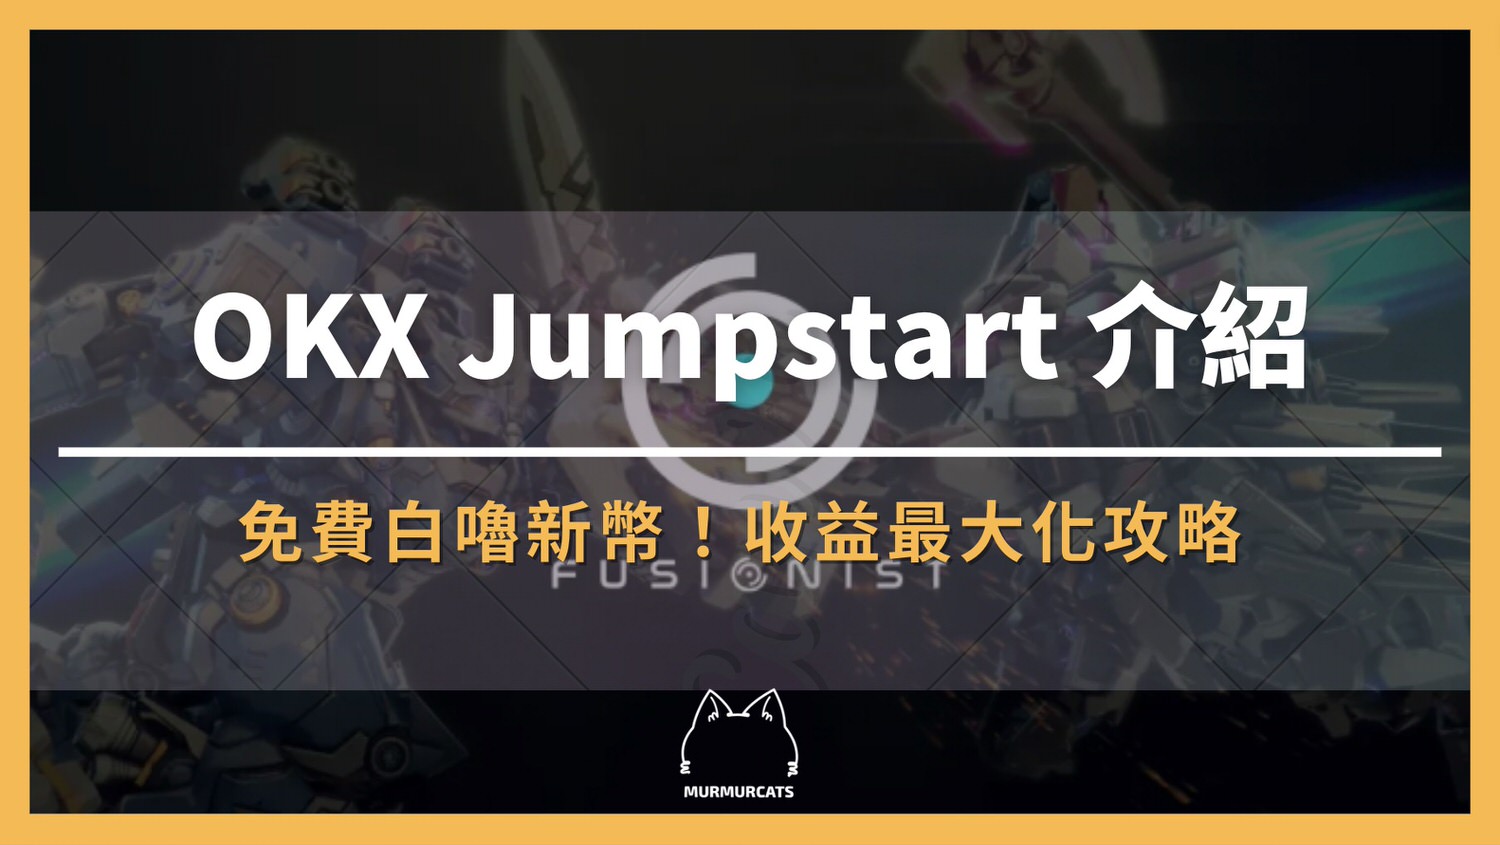 OKX Jumpstart、ACE